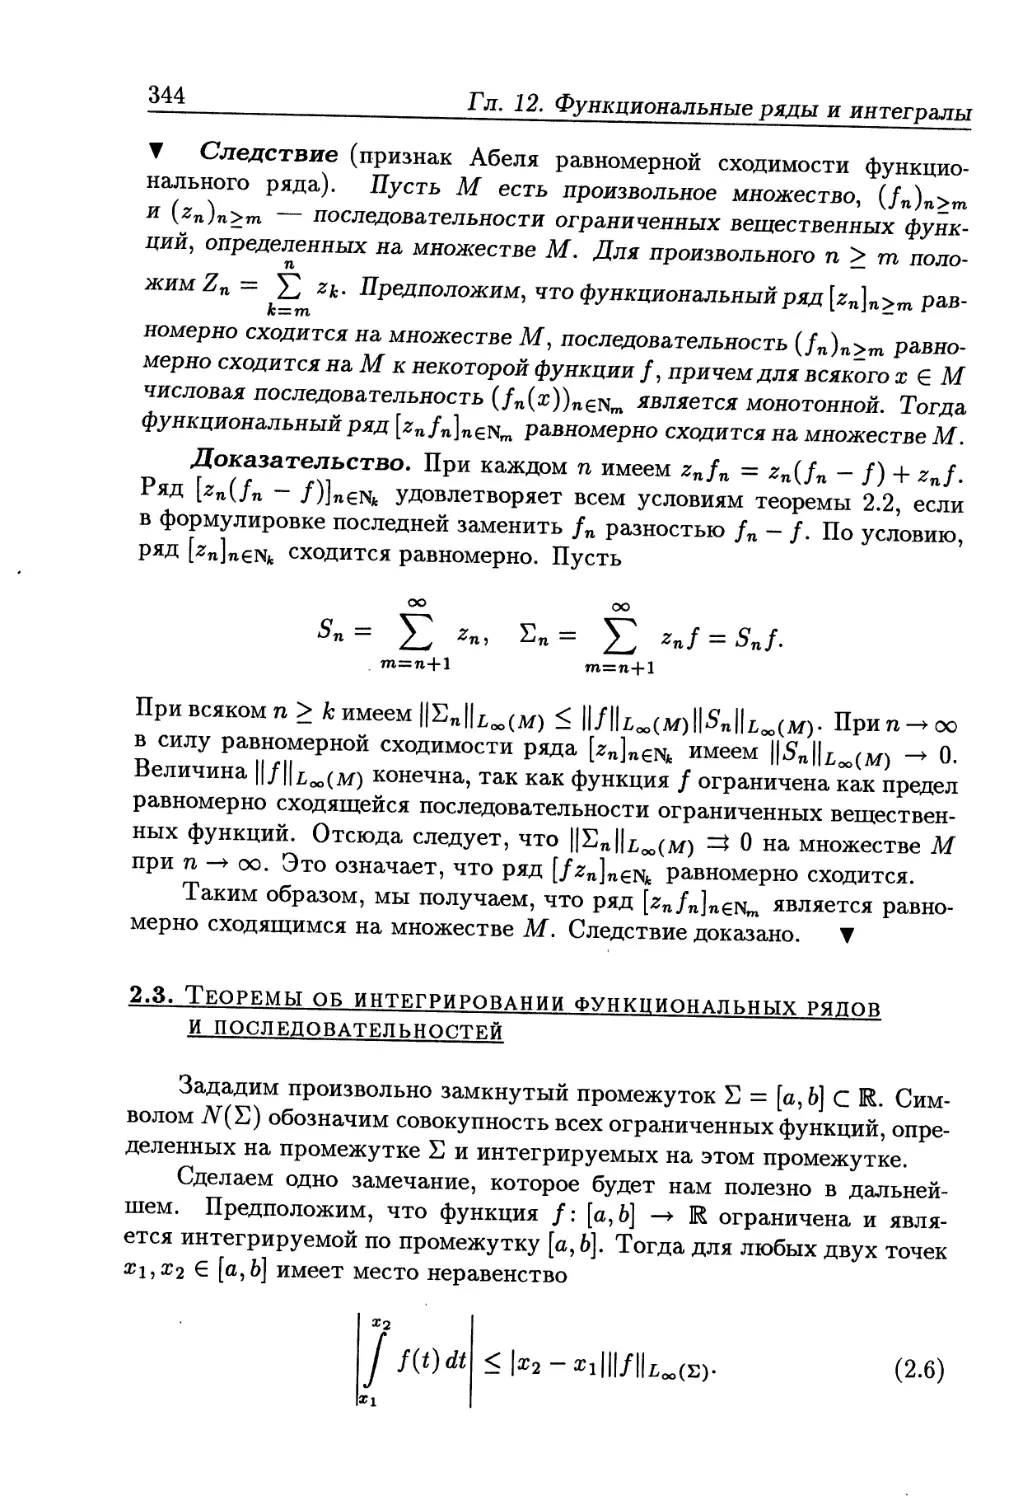 2.3. Теоремы об интегрировании функциональных рядов и последовательностей